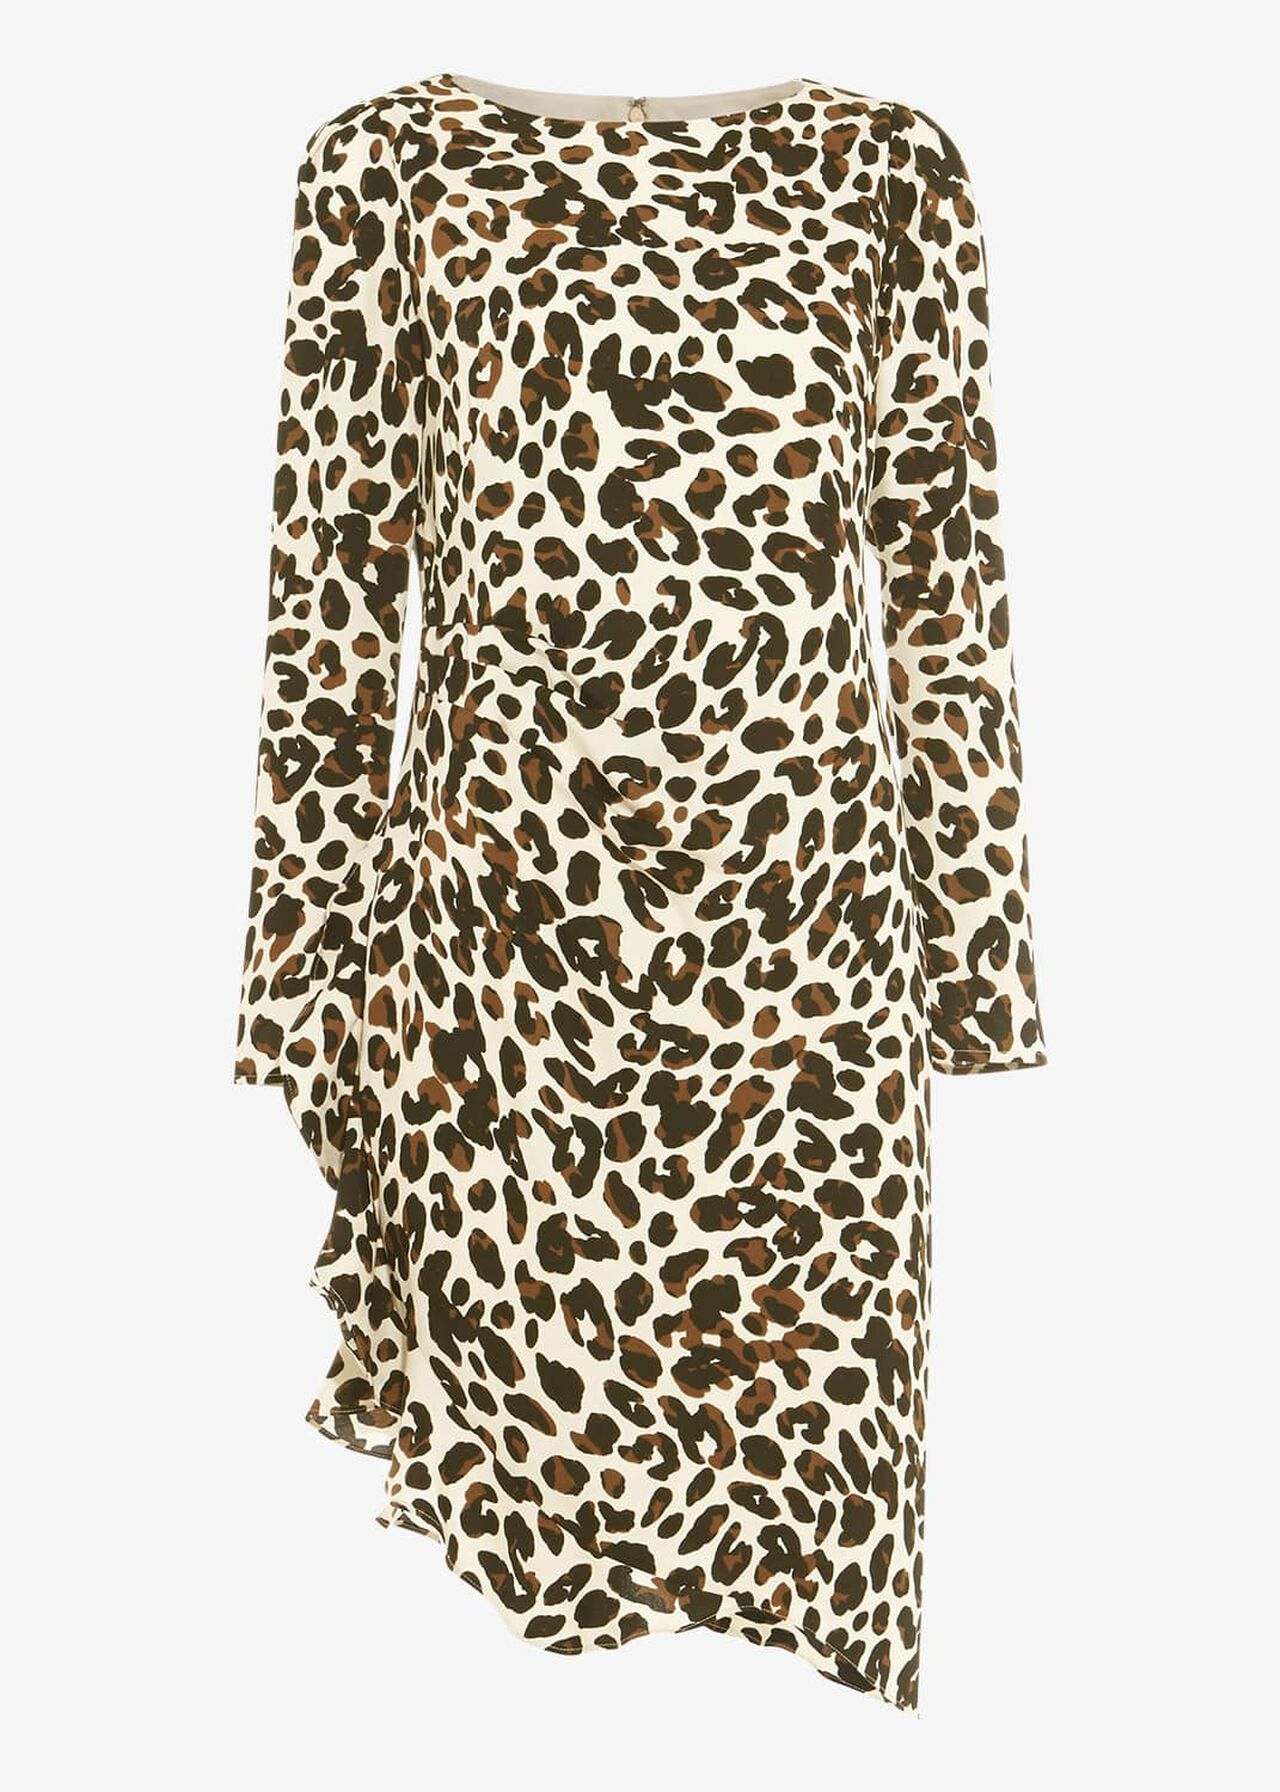 Carrera Leopard Print Dress